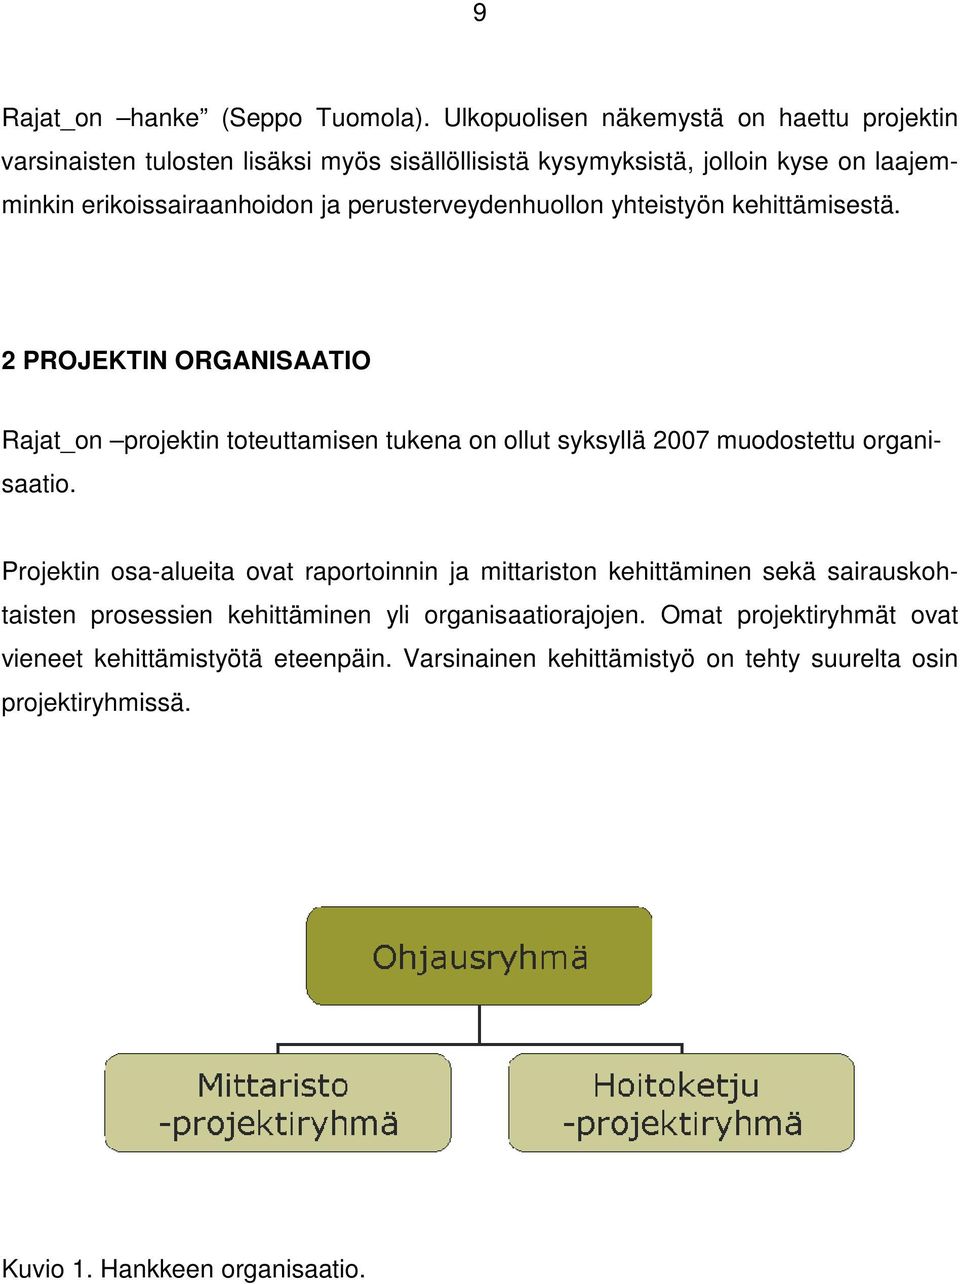 perusterveydenhuollon yhteistyön kehittämisestä. 2 PROJEKTIN ORGANISAATIO Rajat_on projektin toteuttamisen tukena on ollut syksyllä 2007 muodostettu organisaatio.